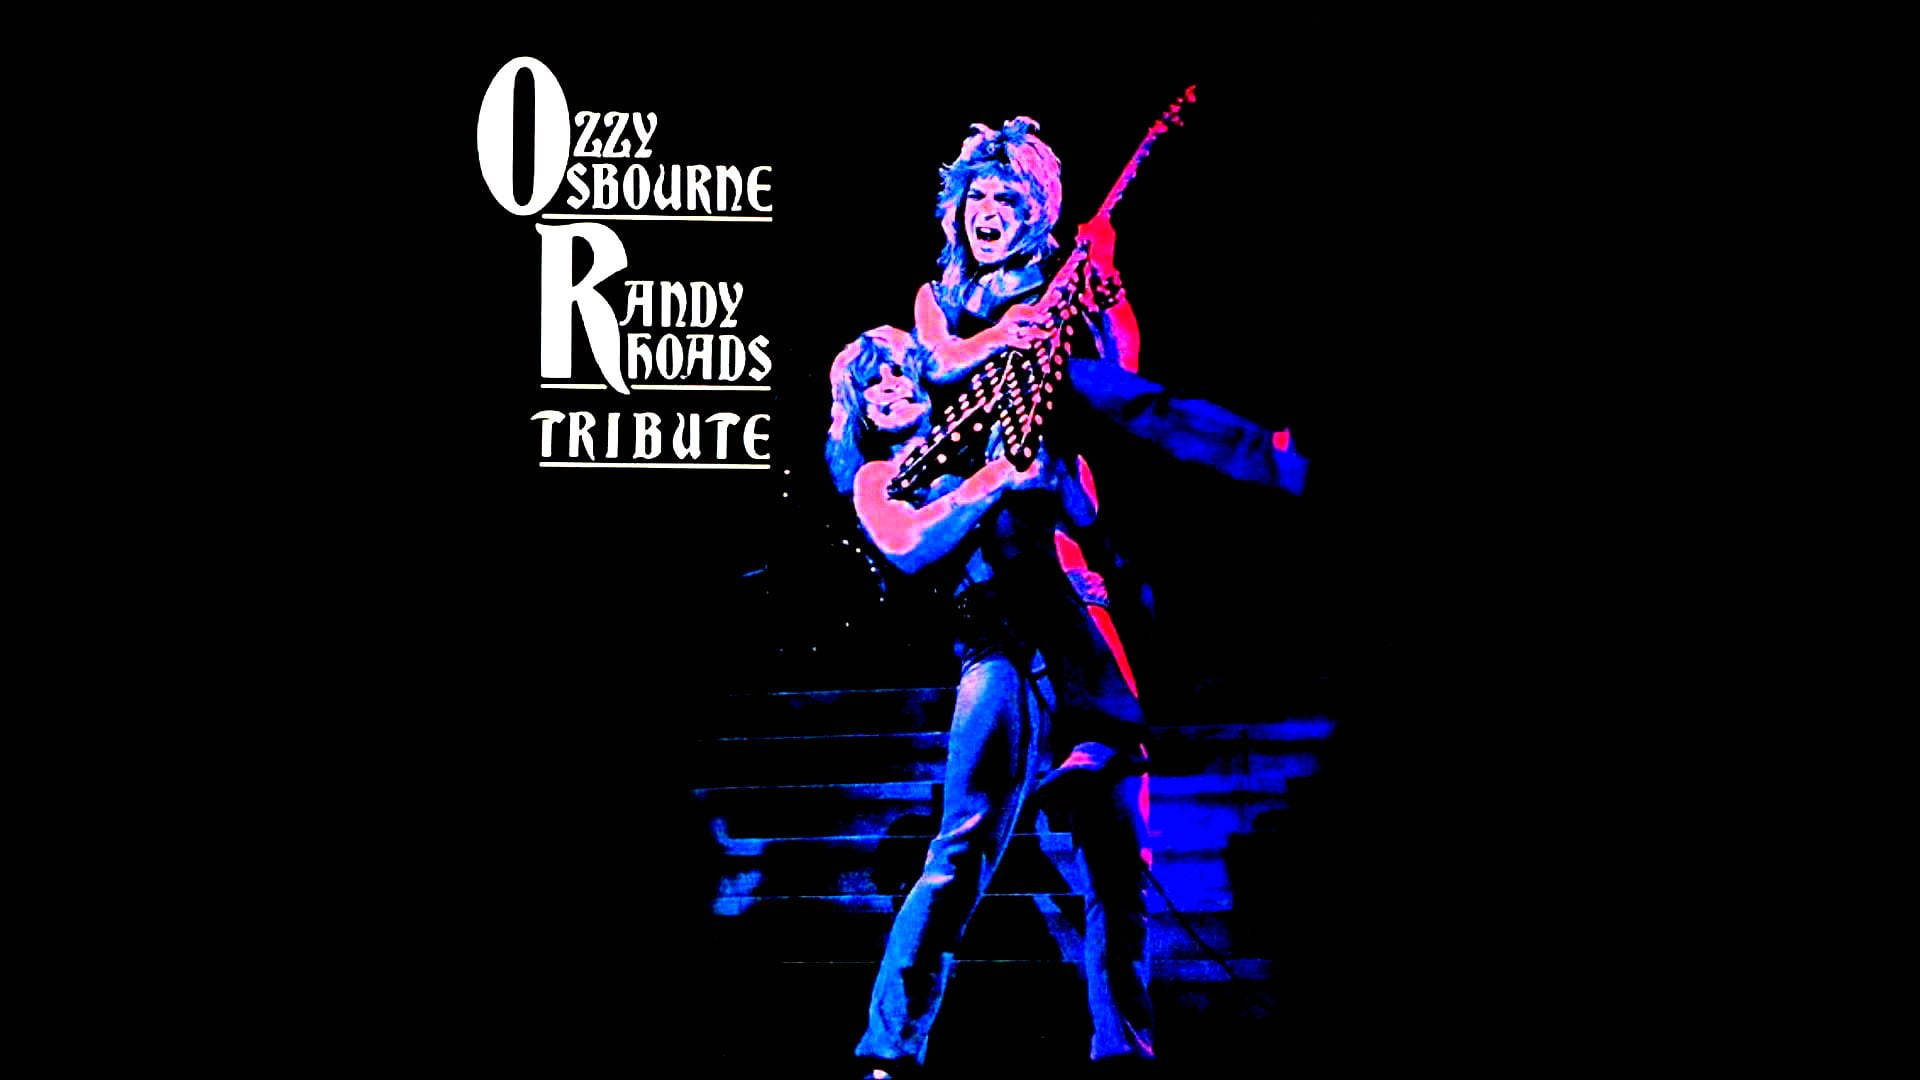 Ozzy Osbourne Tribute Background